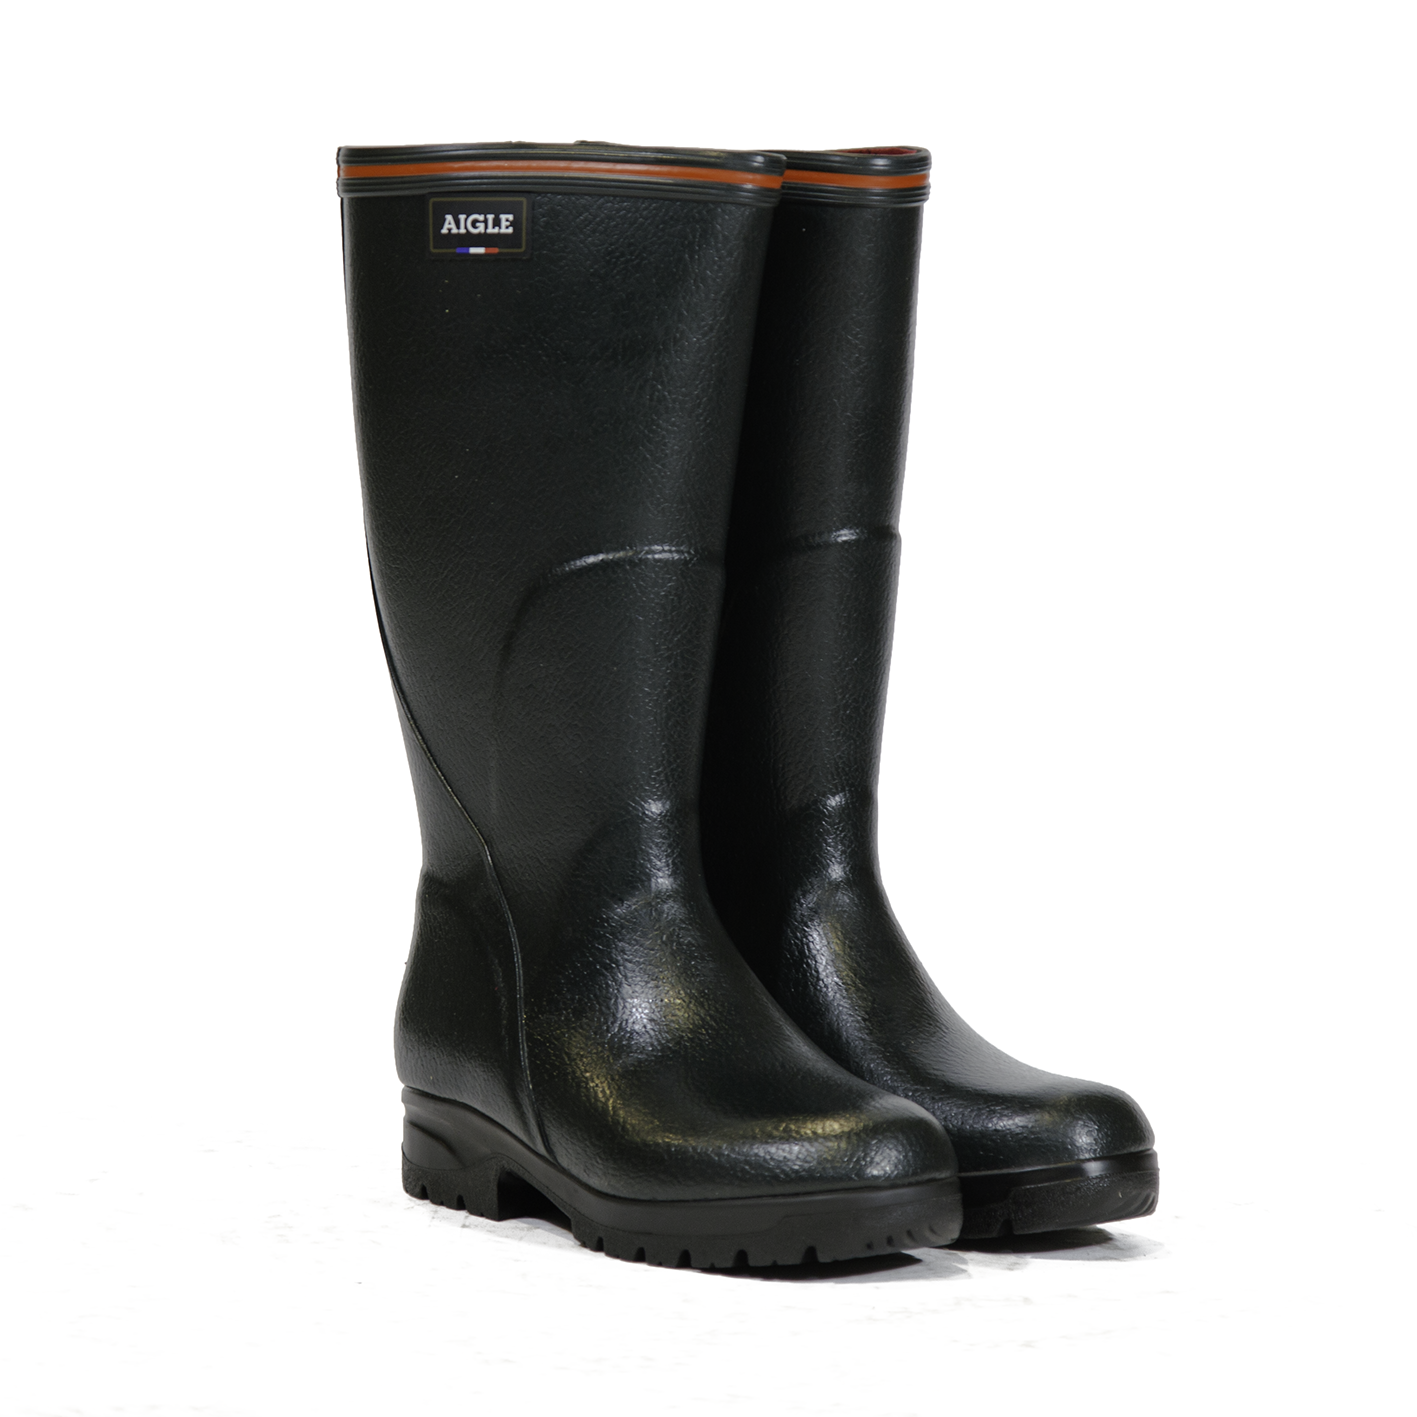 Aigle Tancar Pro ISO Wellington Boots Bronze pair